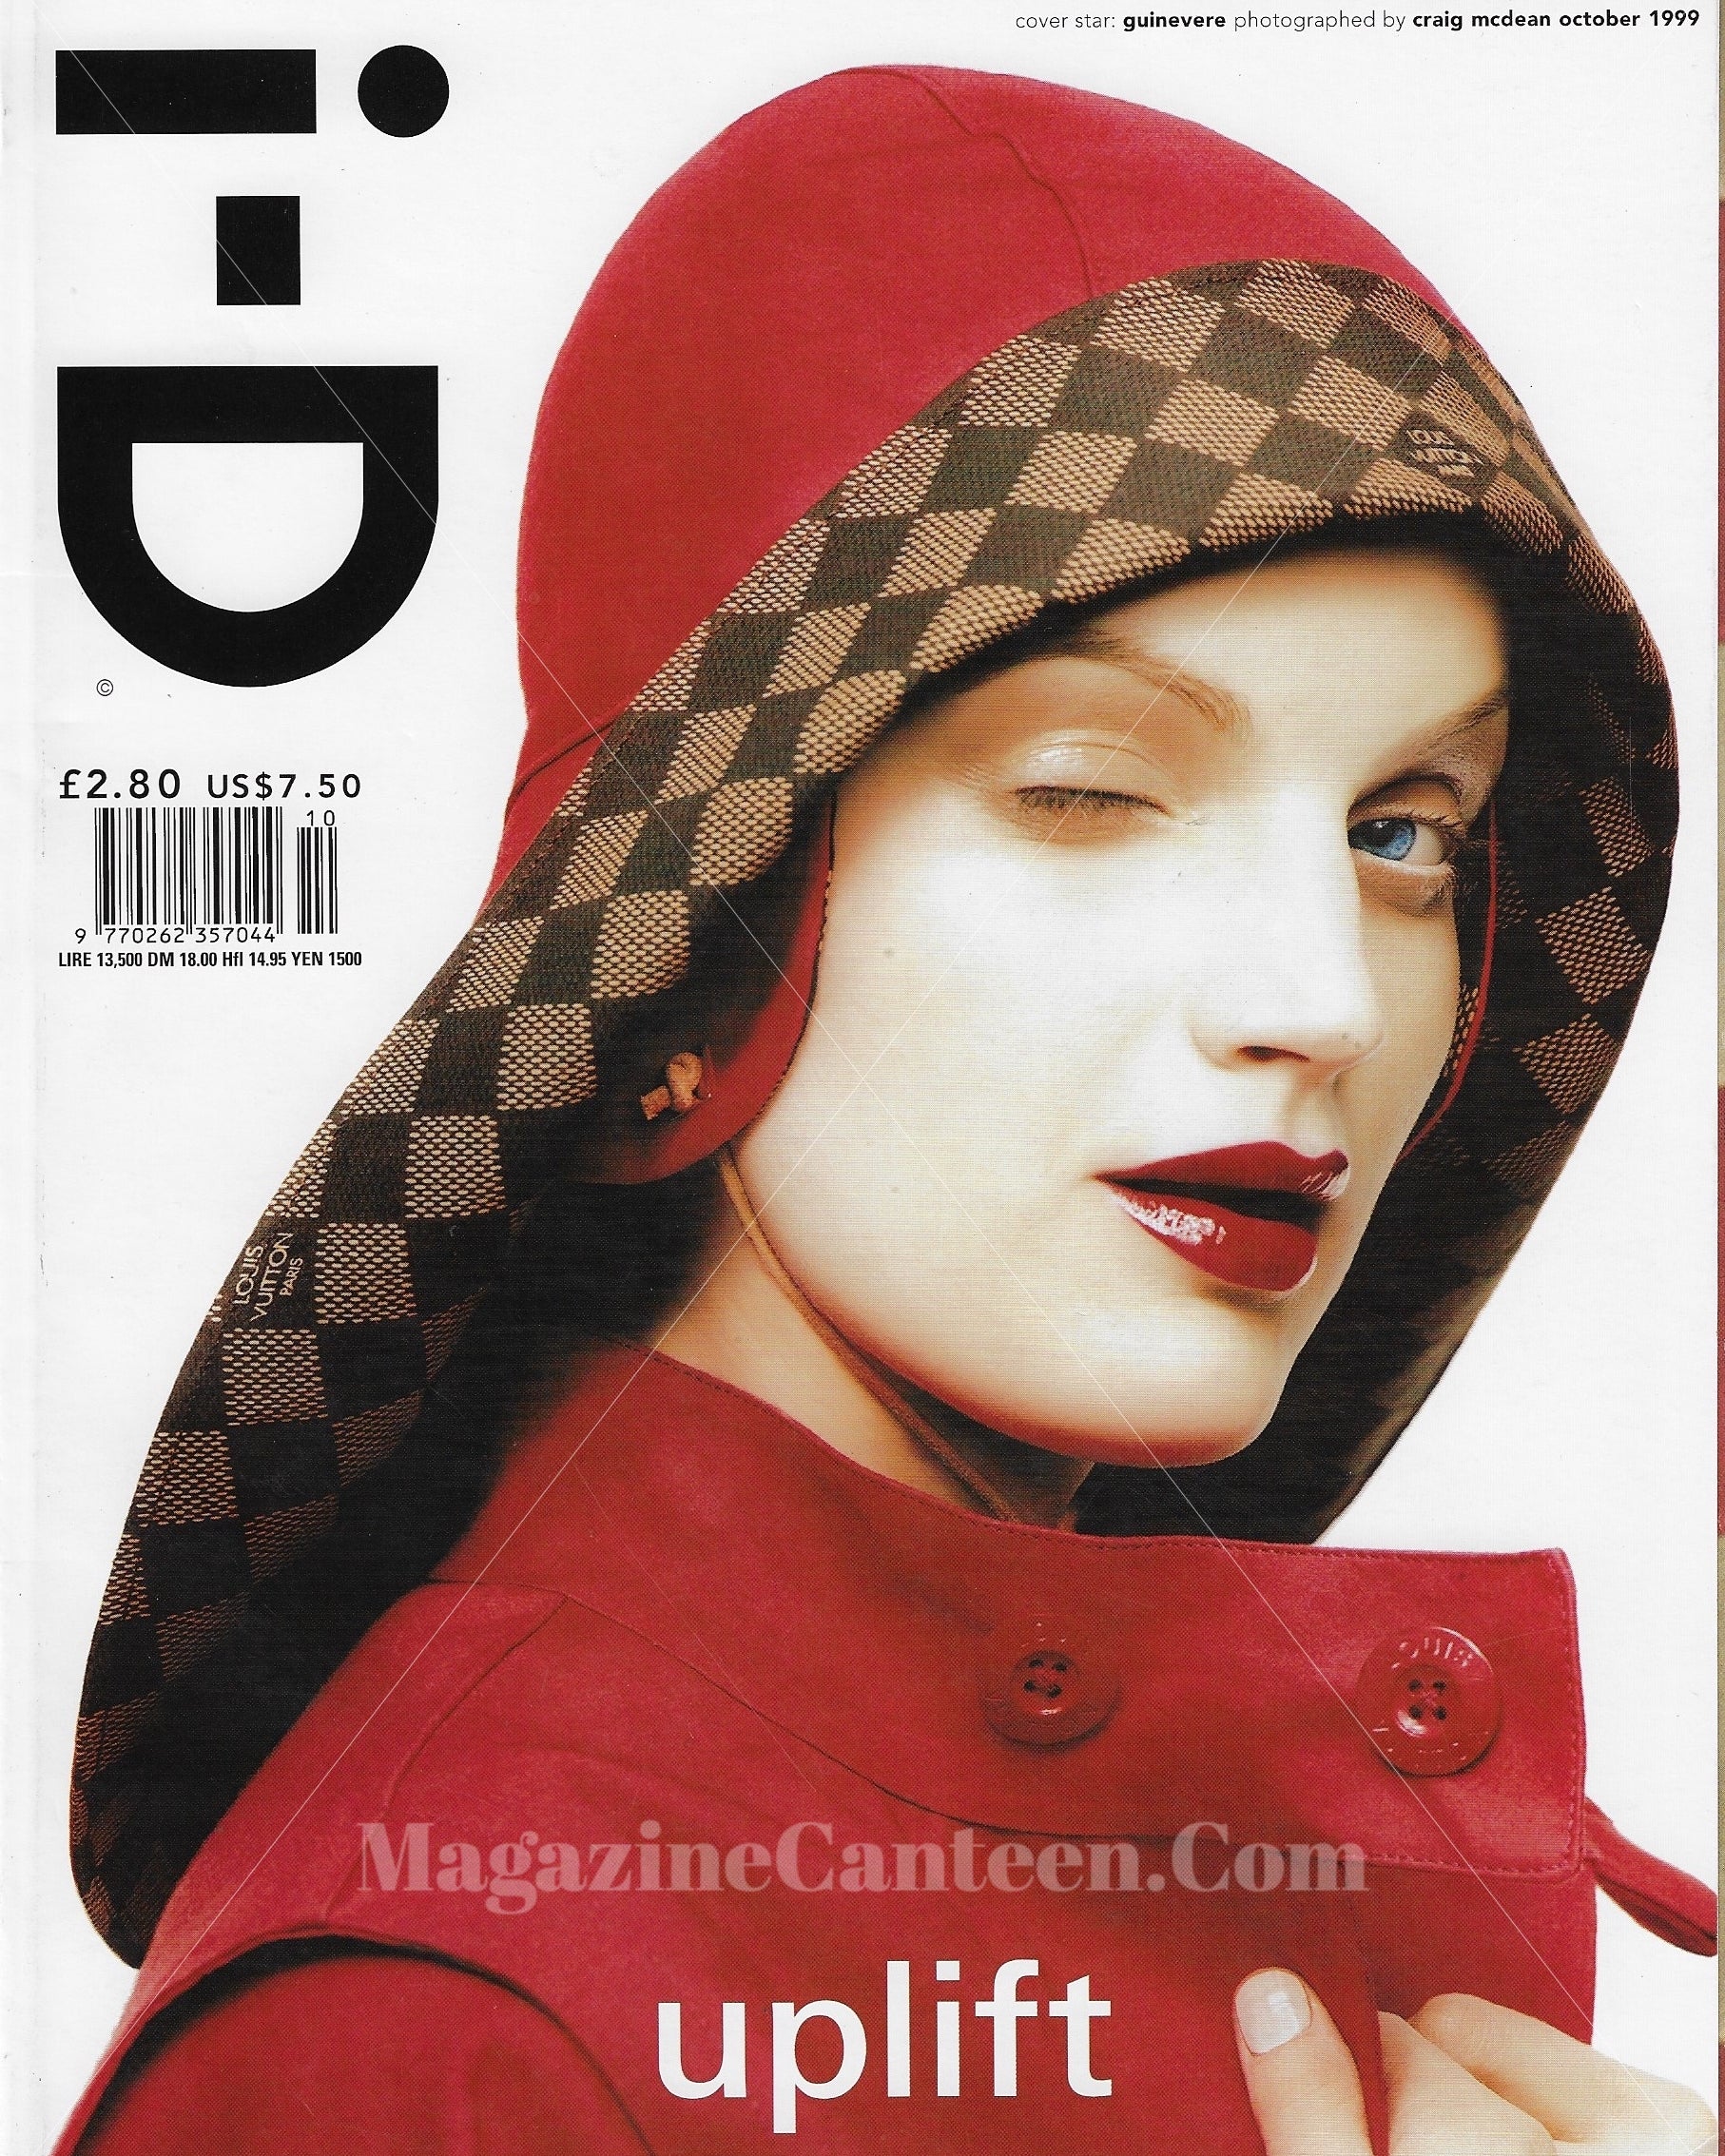 I-D Magazine 191 - Guinevere Van Seenus 1999